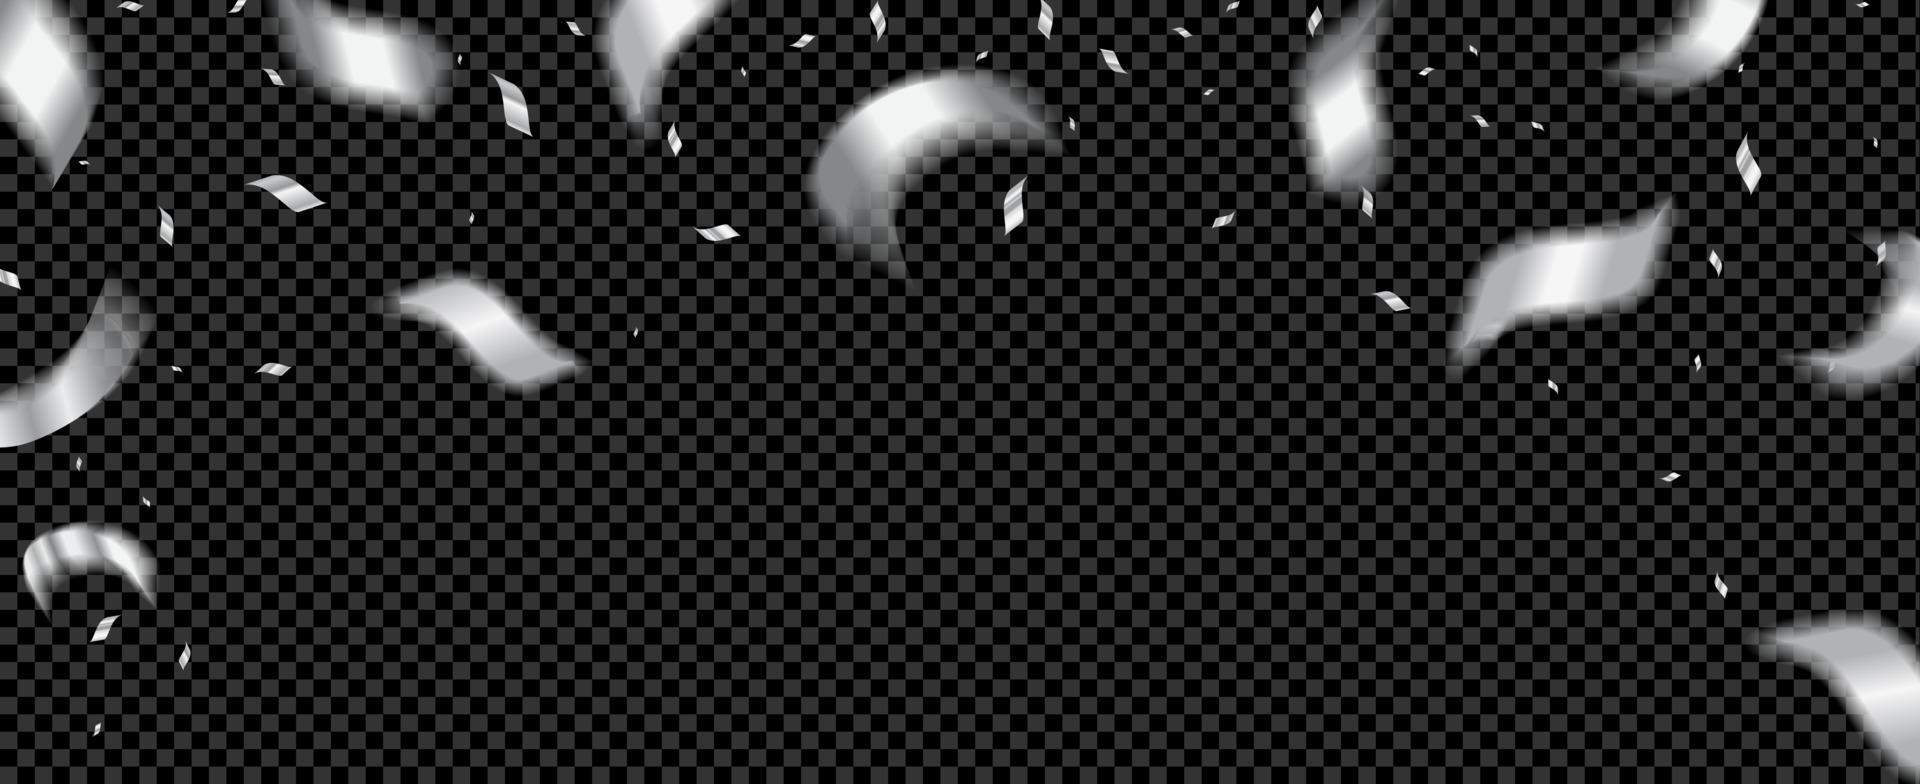 vallende zilveren confetti en kronkelige stukjes wazig in beweging. kerst feestelijke illustratie voor overlay. realistische stijl. op een zwarte achtergrond. vector. vector